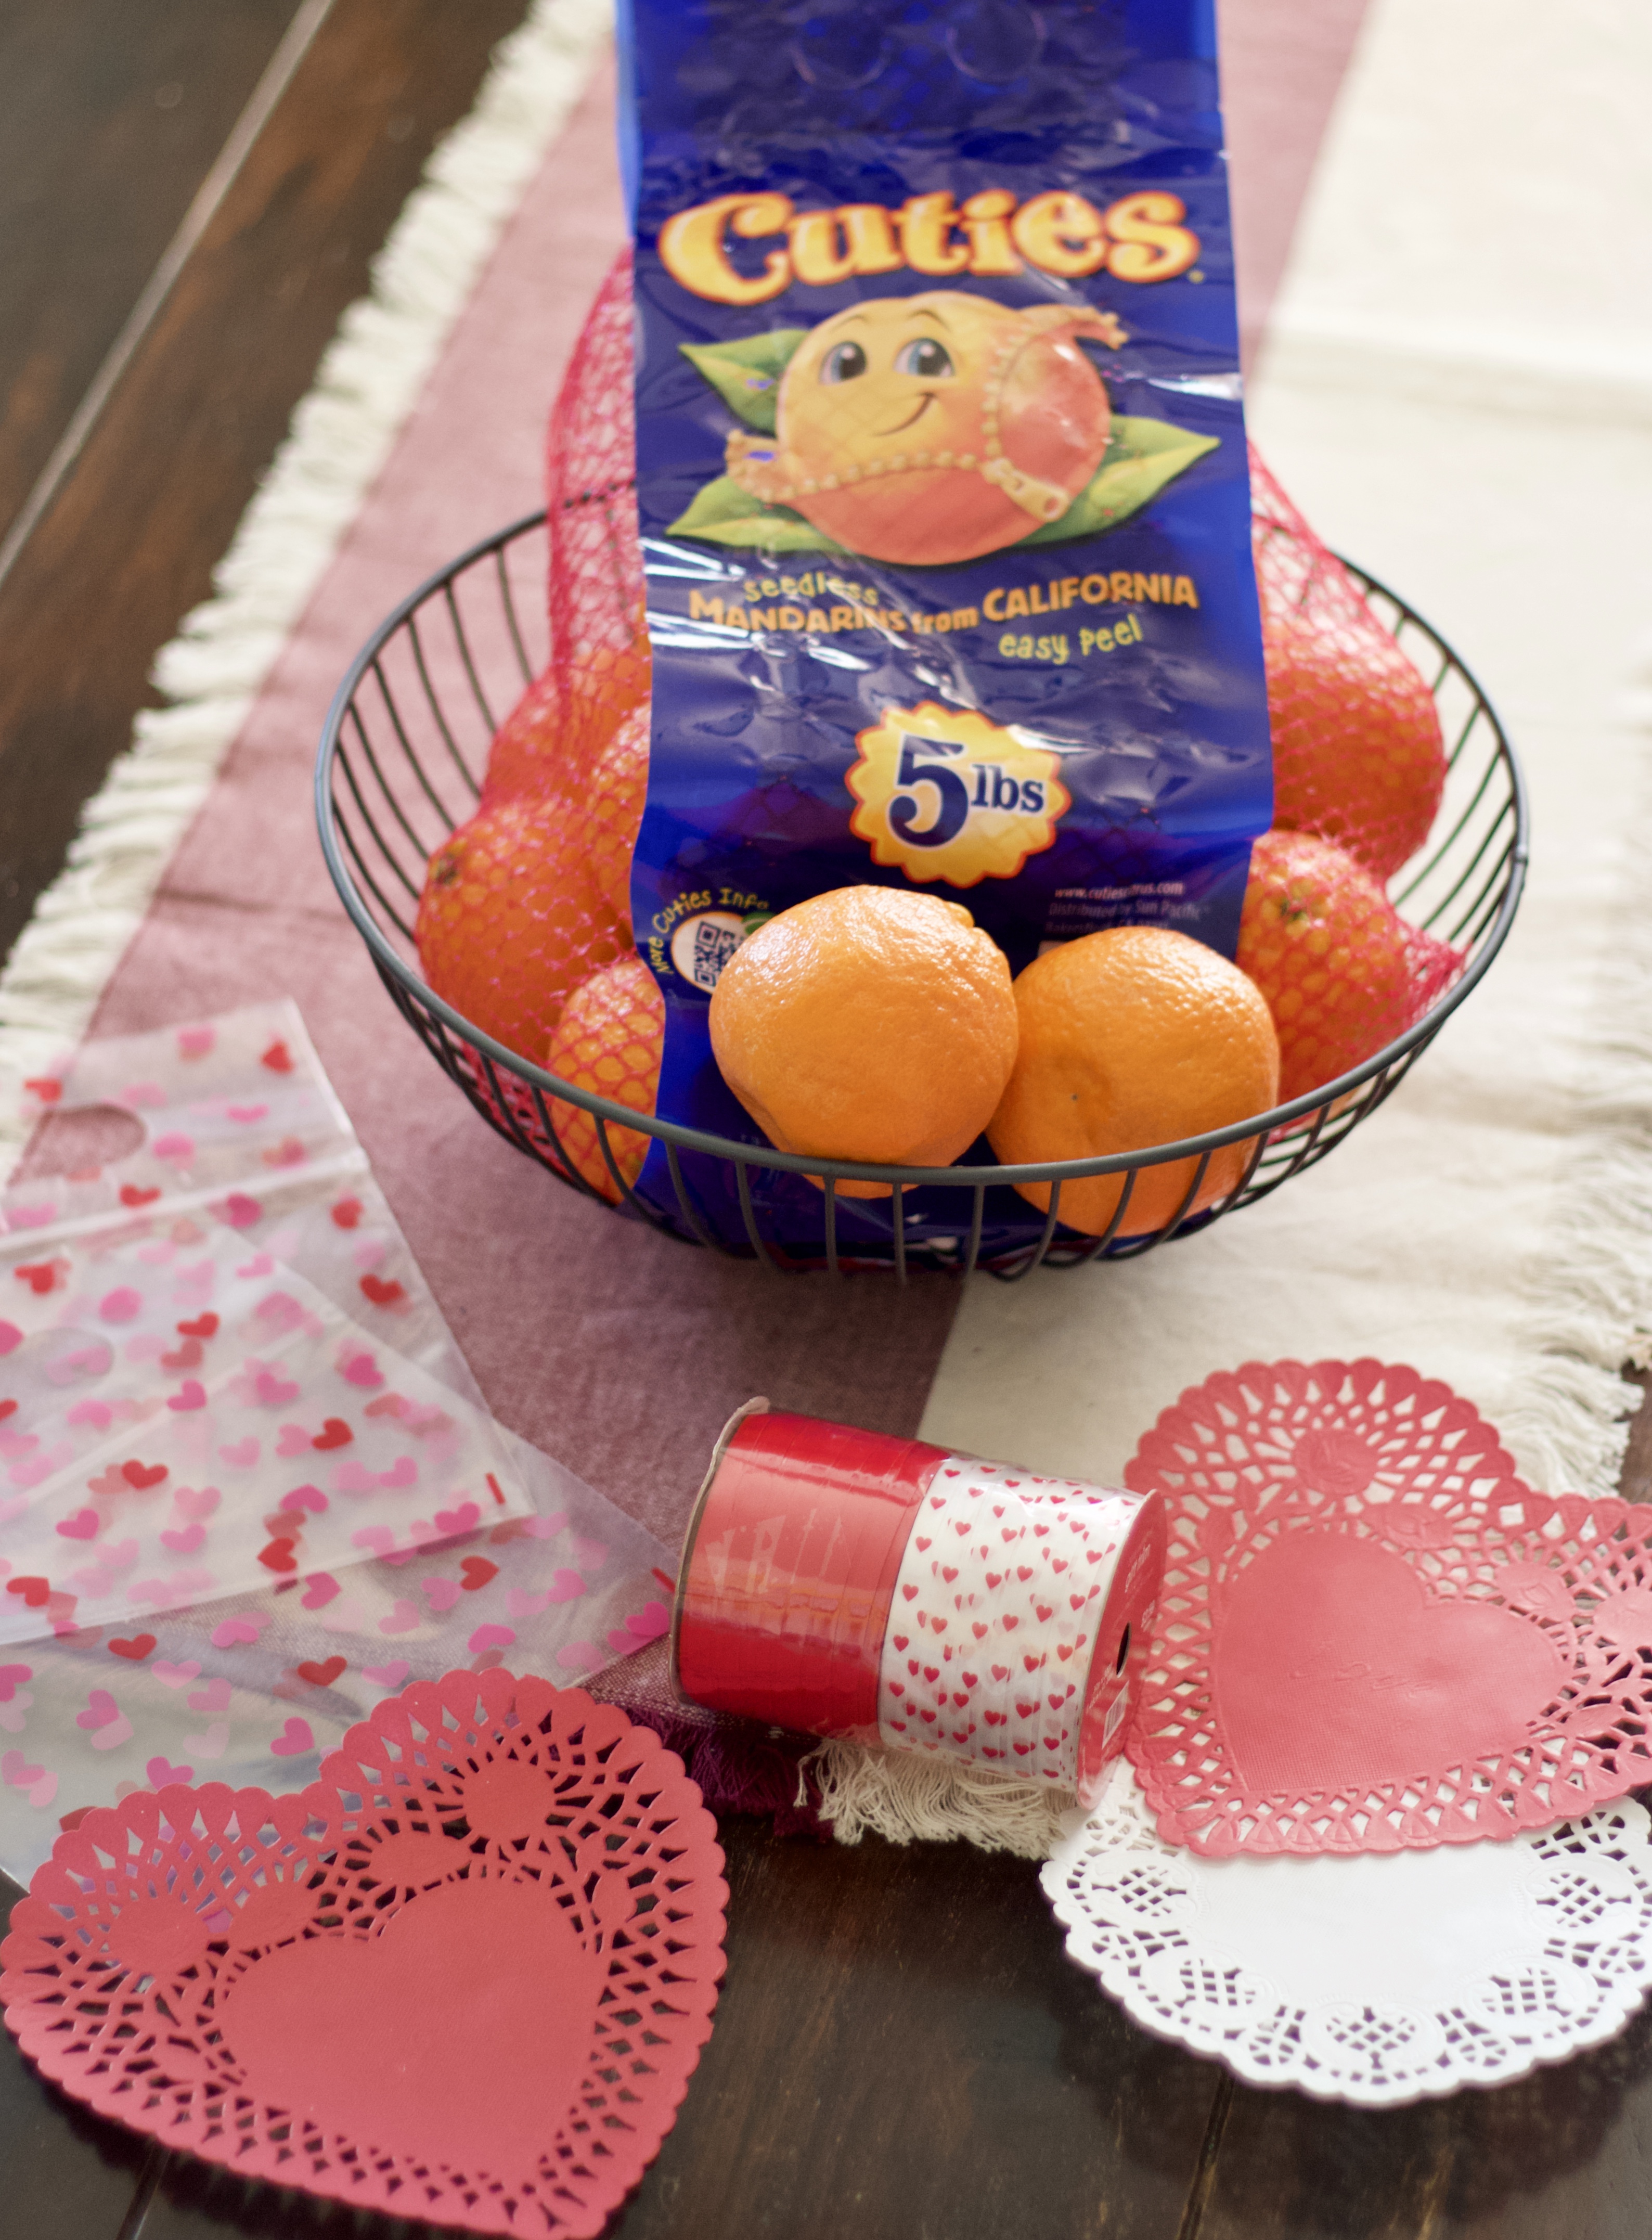 diy valentines for kids with cuties #100daysofsunshine #diyvalentine #healthyvalentine